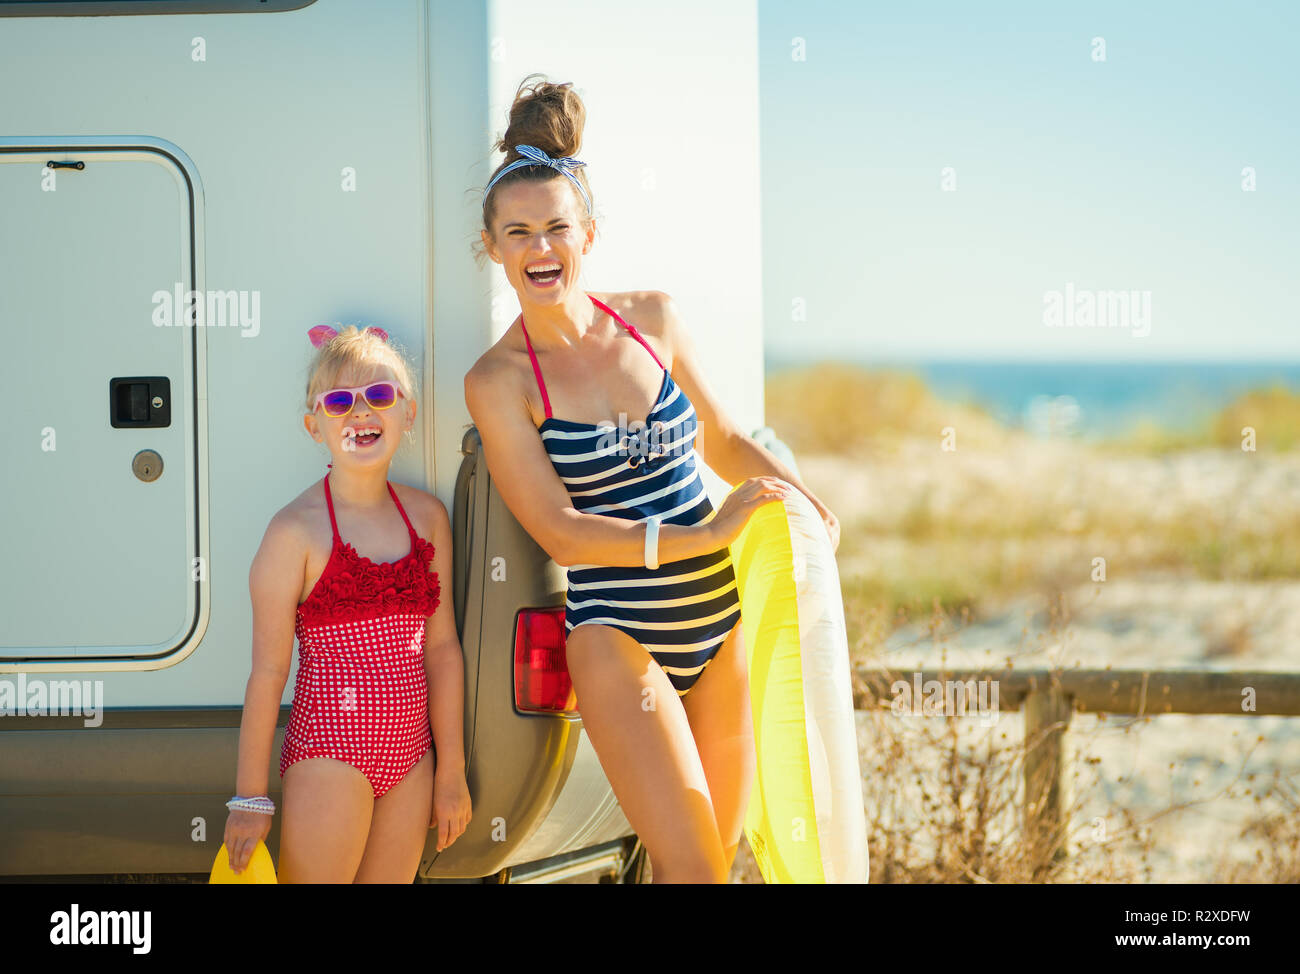 Portrait der glücklichen Mutter und Tochter in Badeanzug mit Gelb  aufblasbarer Rettungsring in der Nähe der Anhänger auf den Strand. Es ist  nichts leichter - Sprung ins t Stockfotografie - Alamy